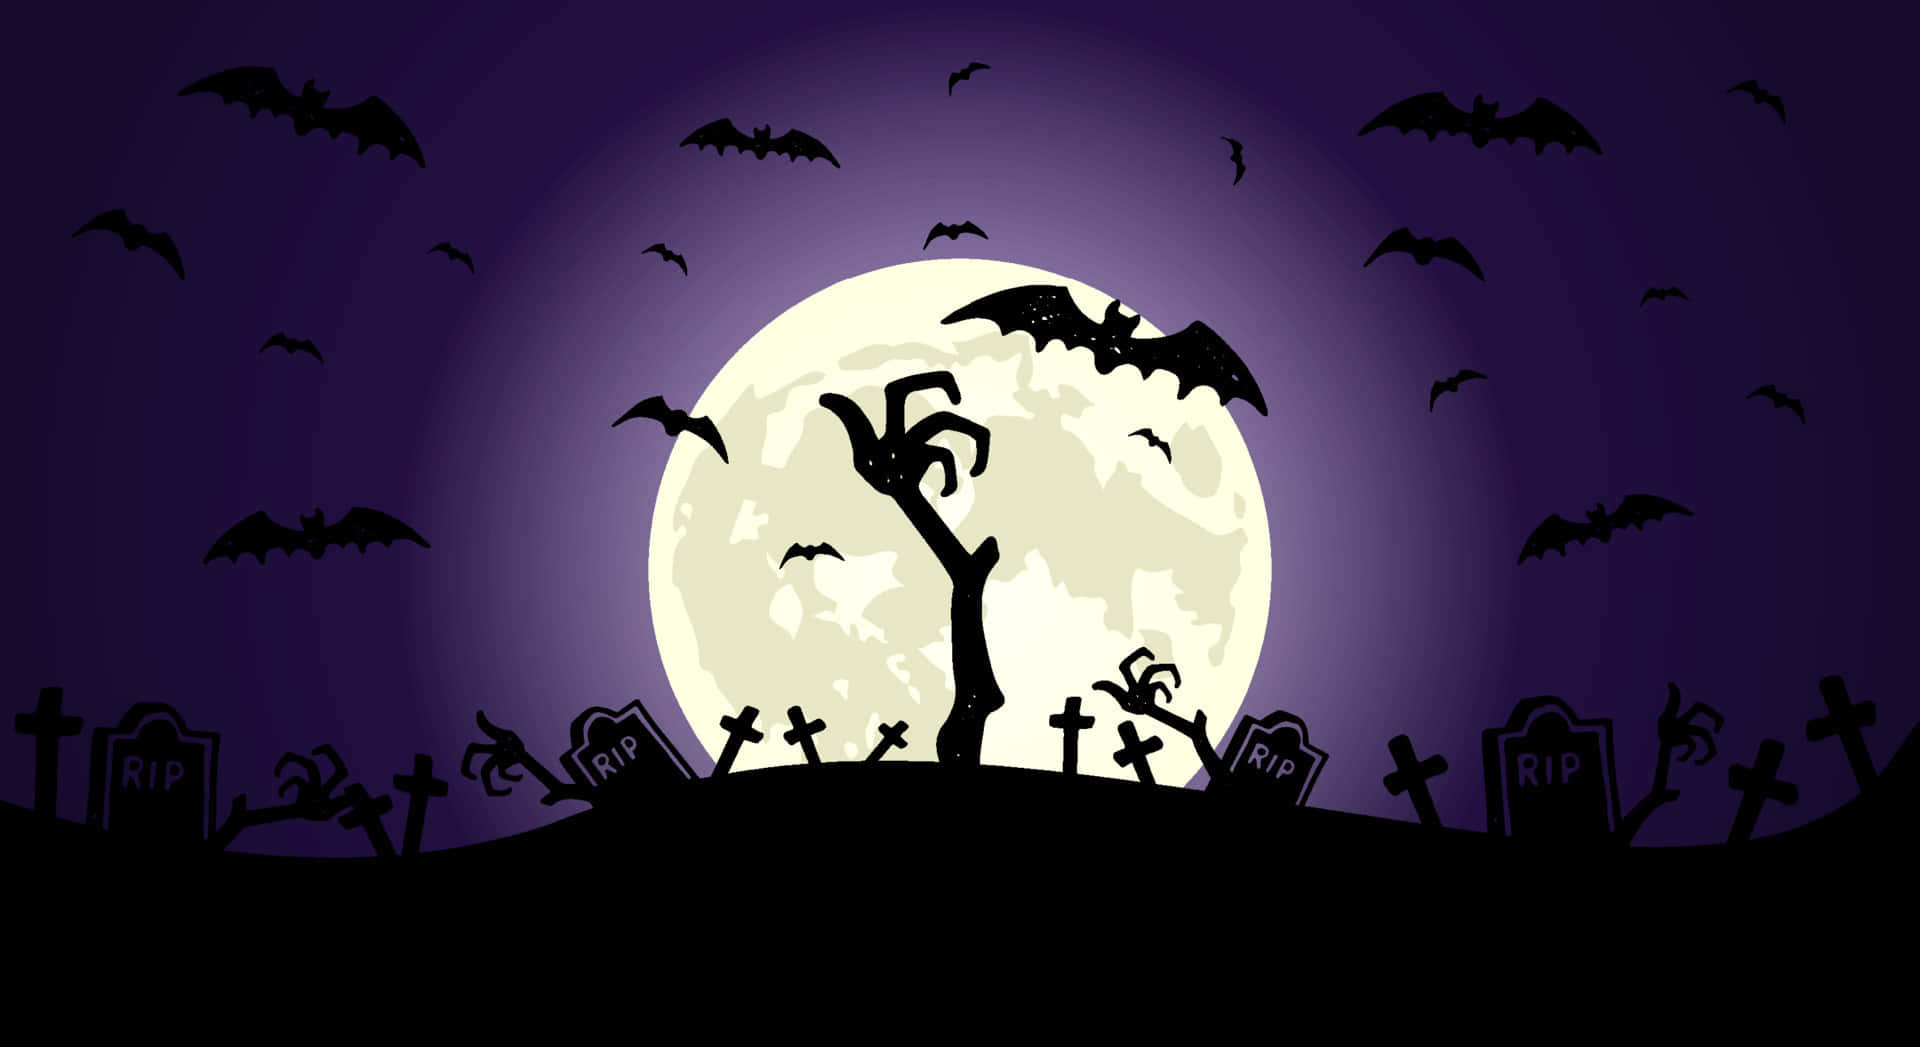 Friedhofbei Nacht Ästhetische, Unheimliche Hintergrund Für Halloween.